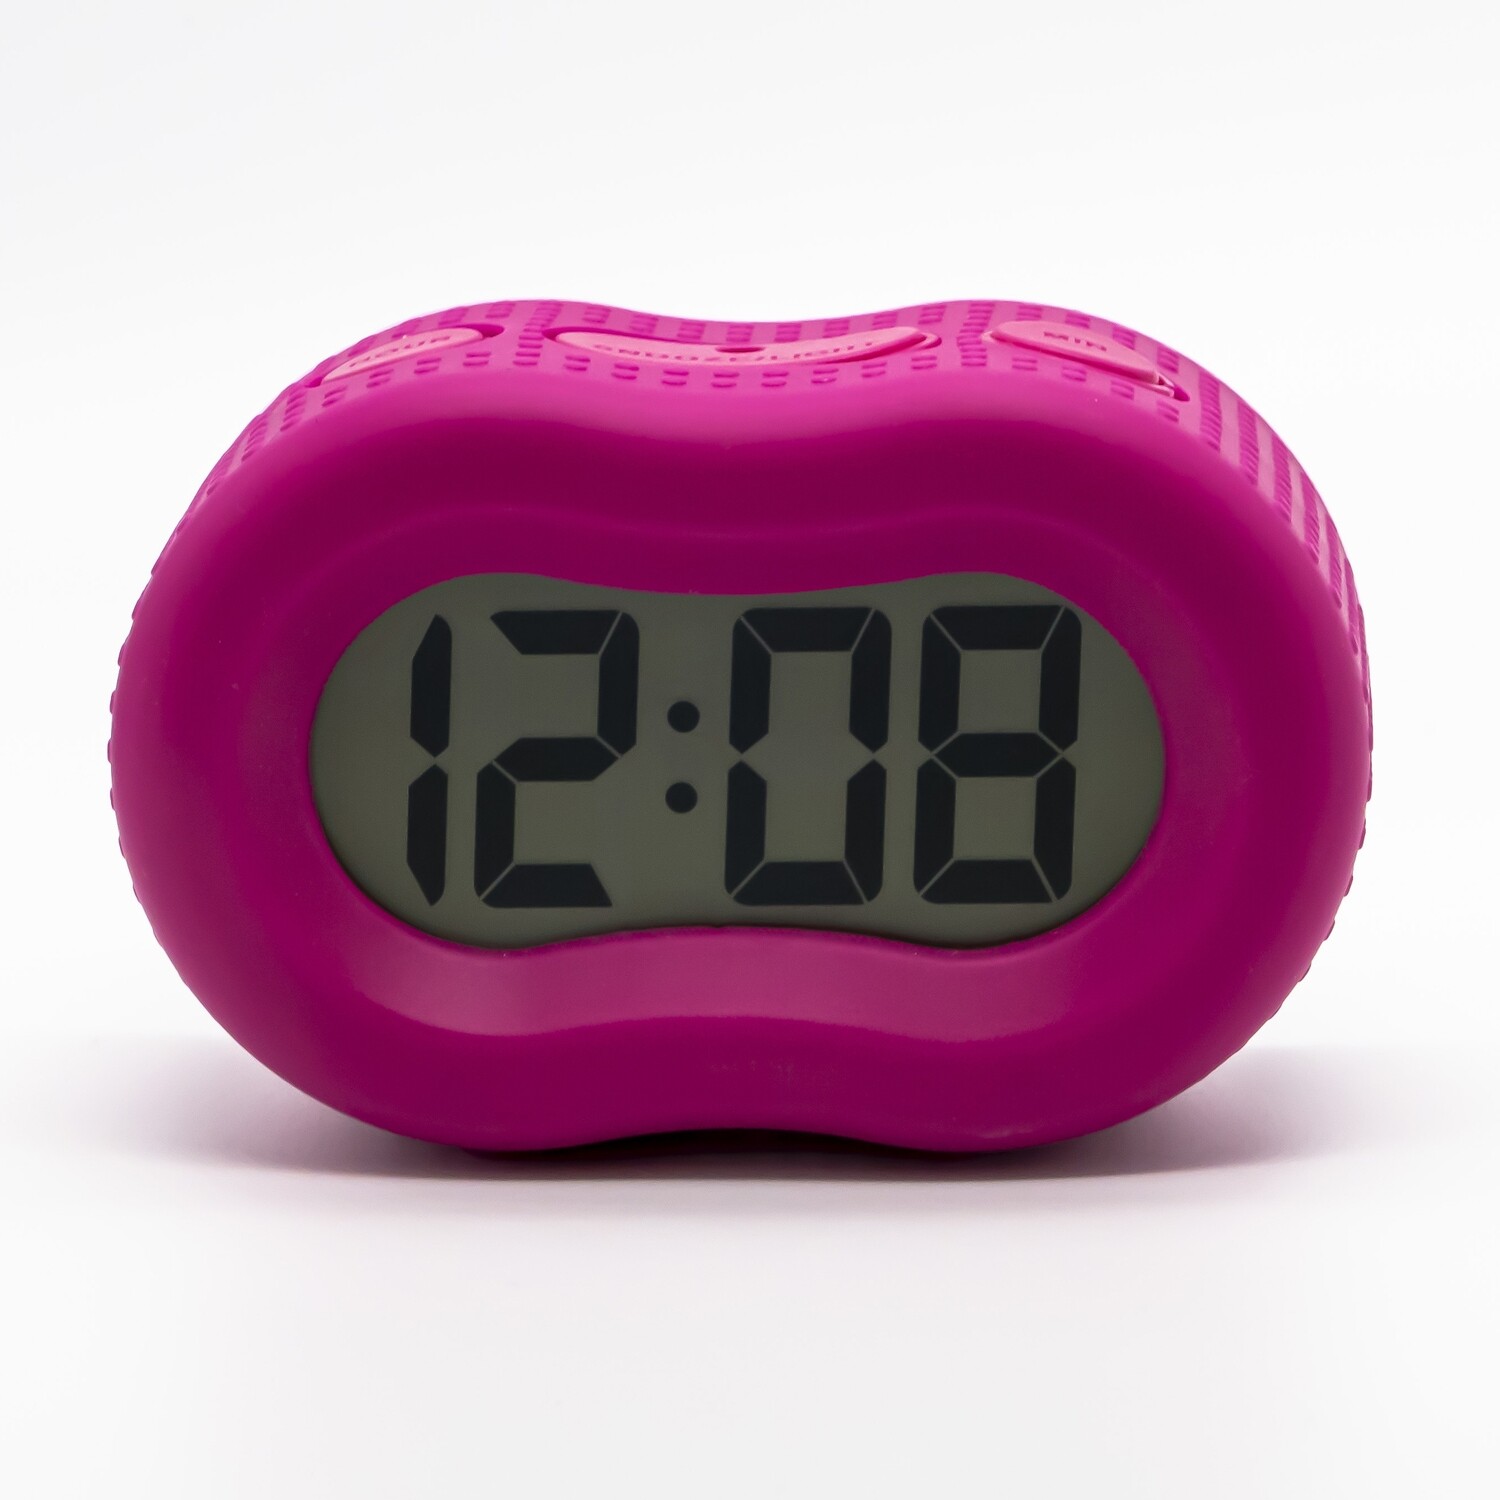 Timelink Rubber Smartlight Alarm Clock Pink